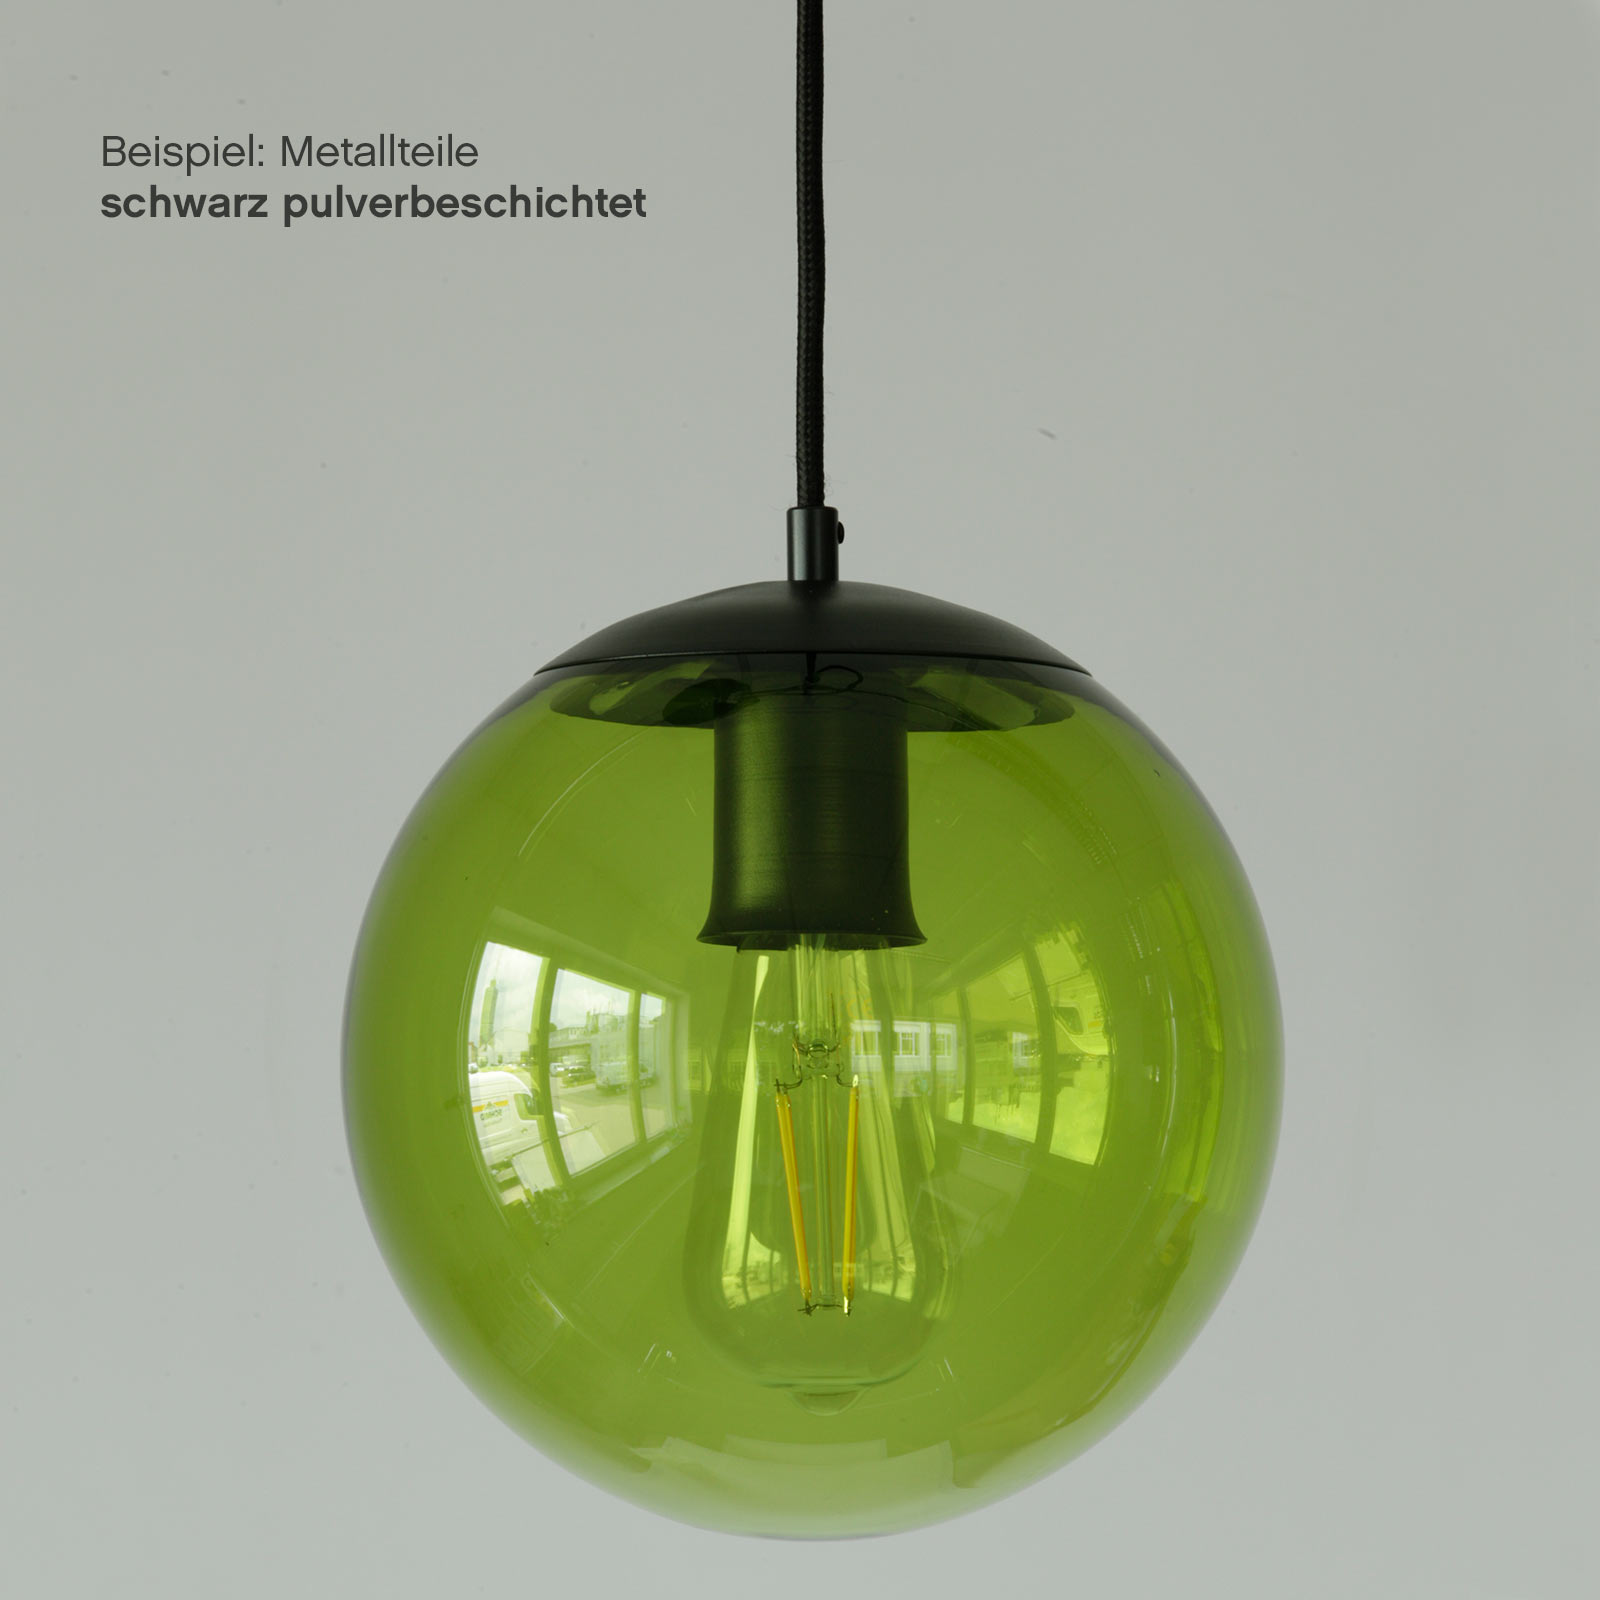 Bunt gefärbte Glaskugel-Leuchte, div. Glas-Farben, Ø 22 cm: Olivgrün, Metallteile schwarz pulverbeschichtet